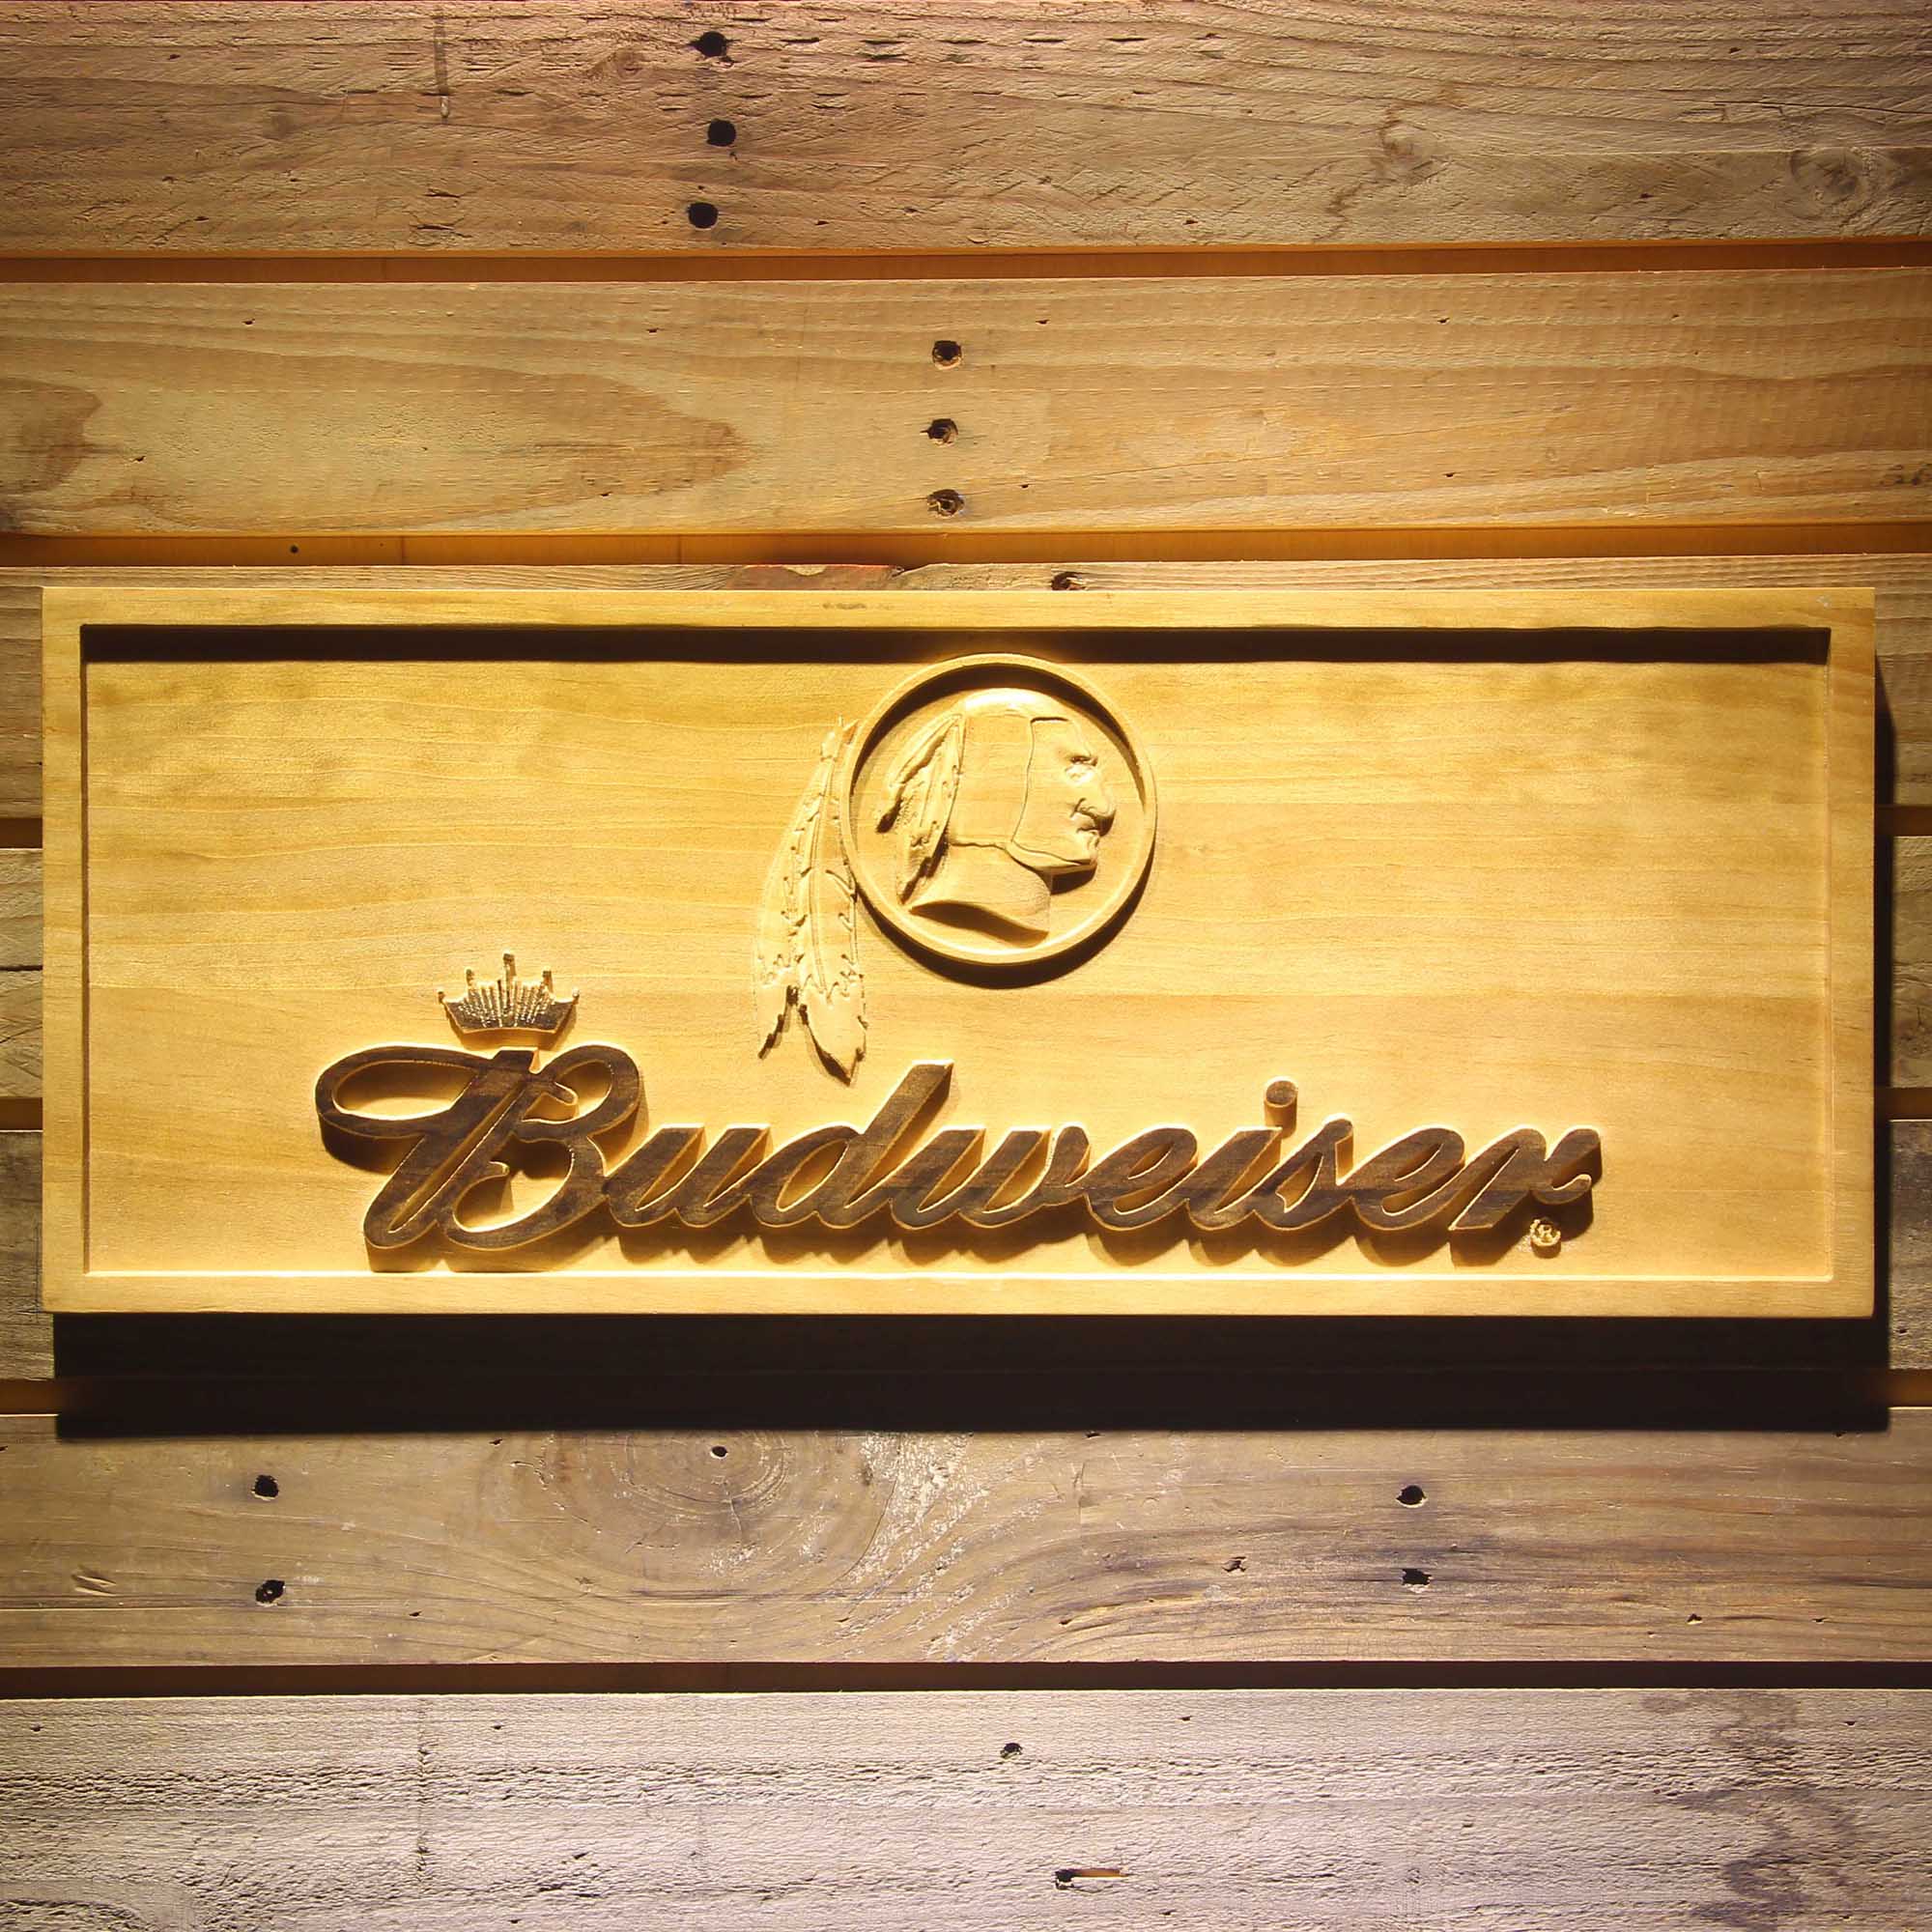 Washington Redskins Budweiser 3D Wooden Engrave Sign